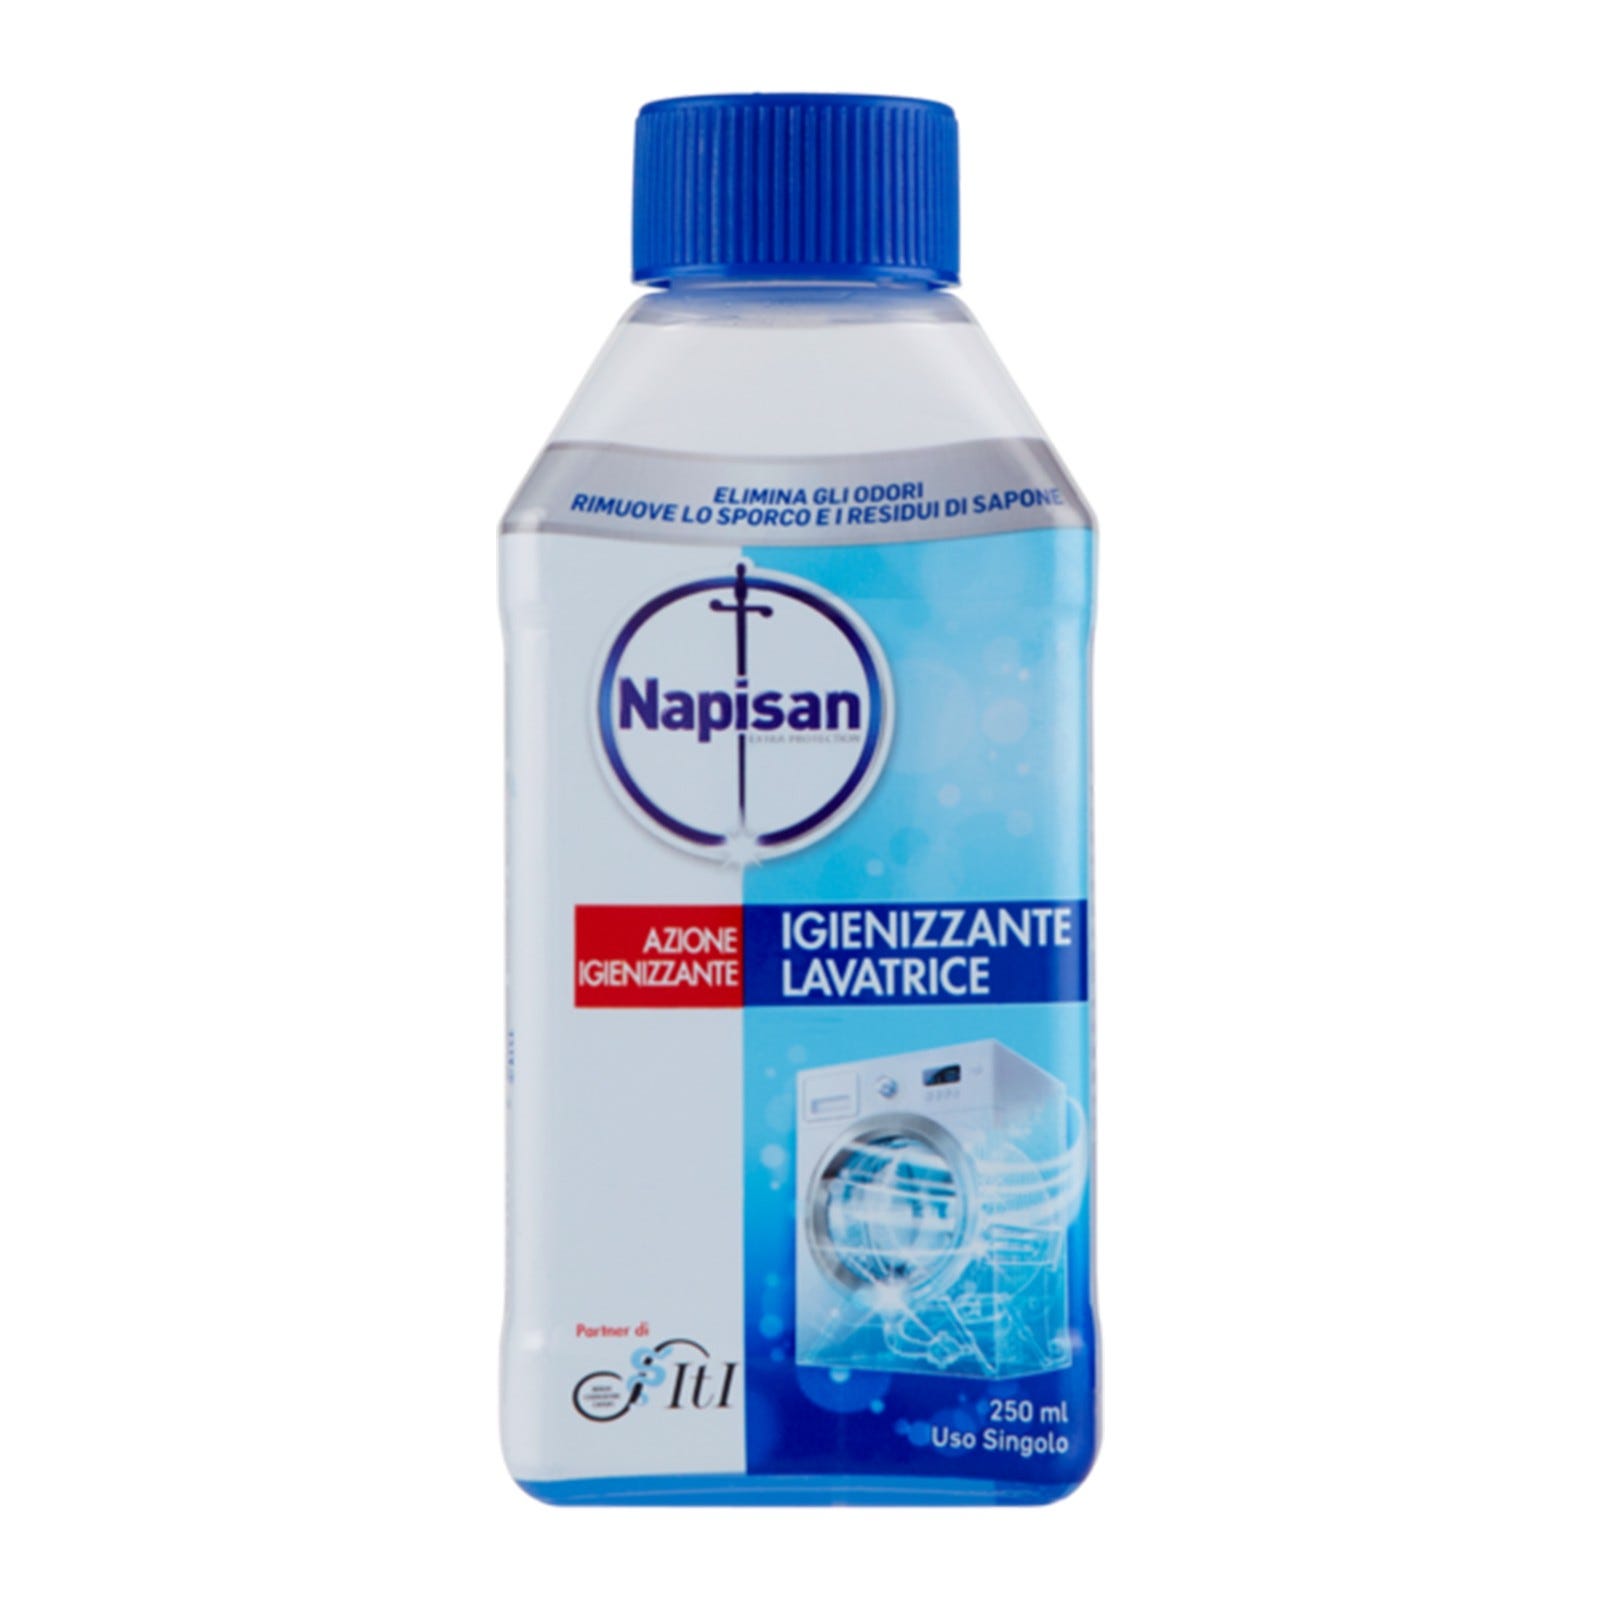 Anticalcaire gel Calgon 4-in-1 (750ml) acheter à prix réduit